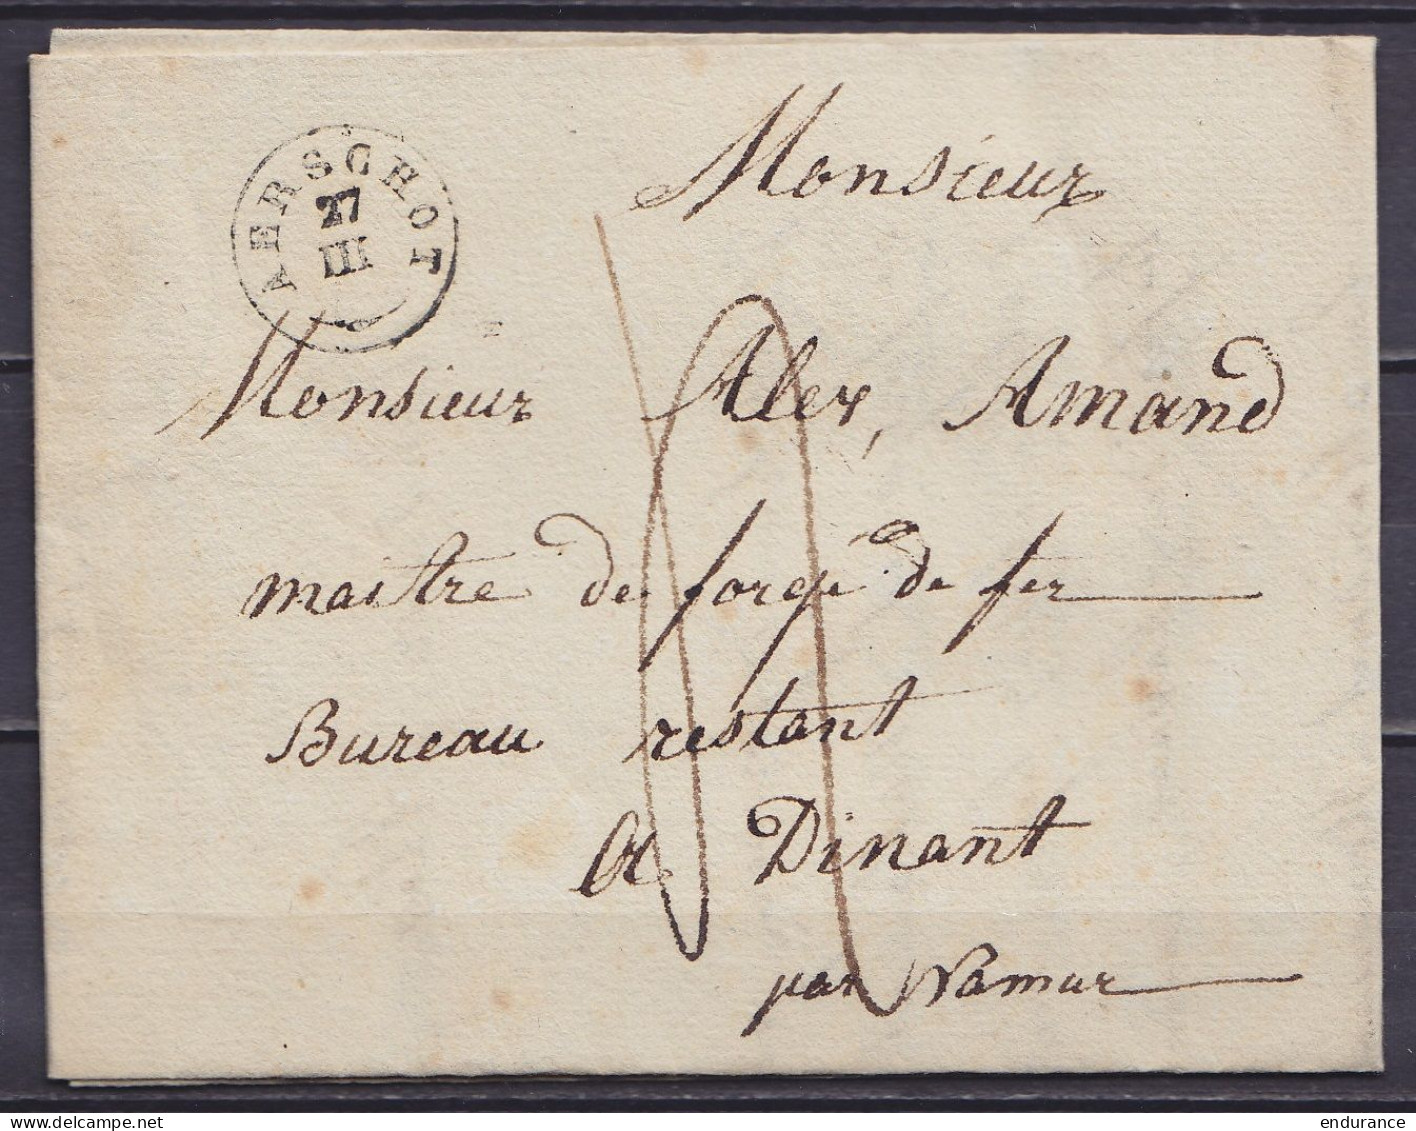 L. Datée 26 Mars 1838 Càd T18 AERSCHOT /27 III Pour Bureau Restant à DINANT - Port "4" (au Dos: Càd DINANT) - 1830-1849 (Unabhängiges Belgien)